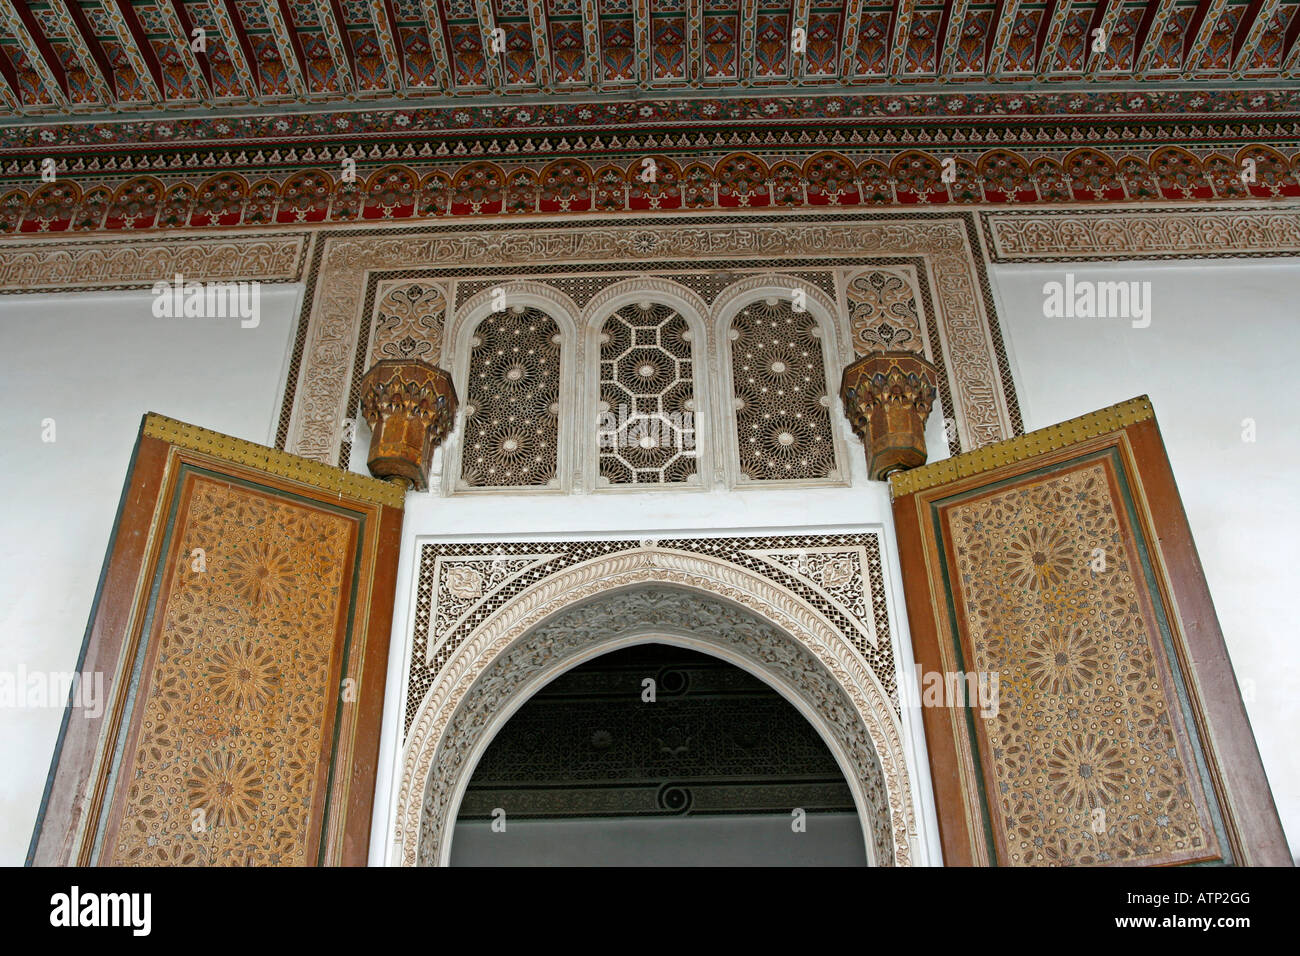 En stuc sculpté un plafond en bois peint et décoré de motifs zellige portes au Palais de la Bahia, Marrakech, Maroc Banque D'Images